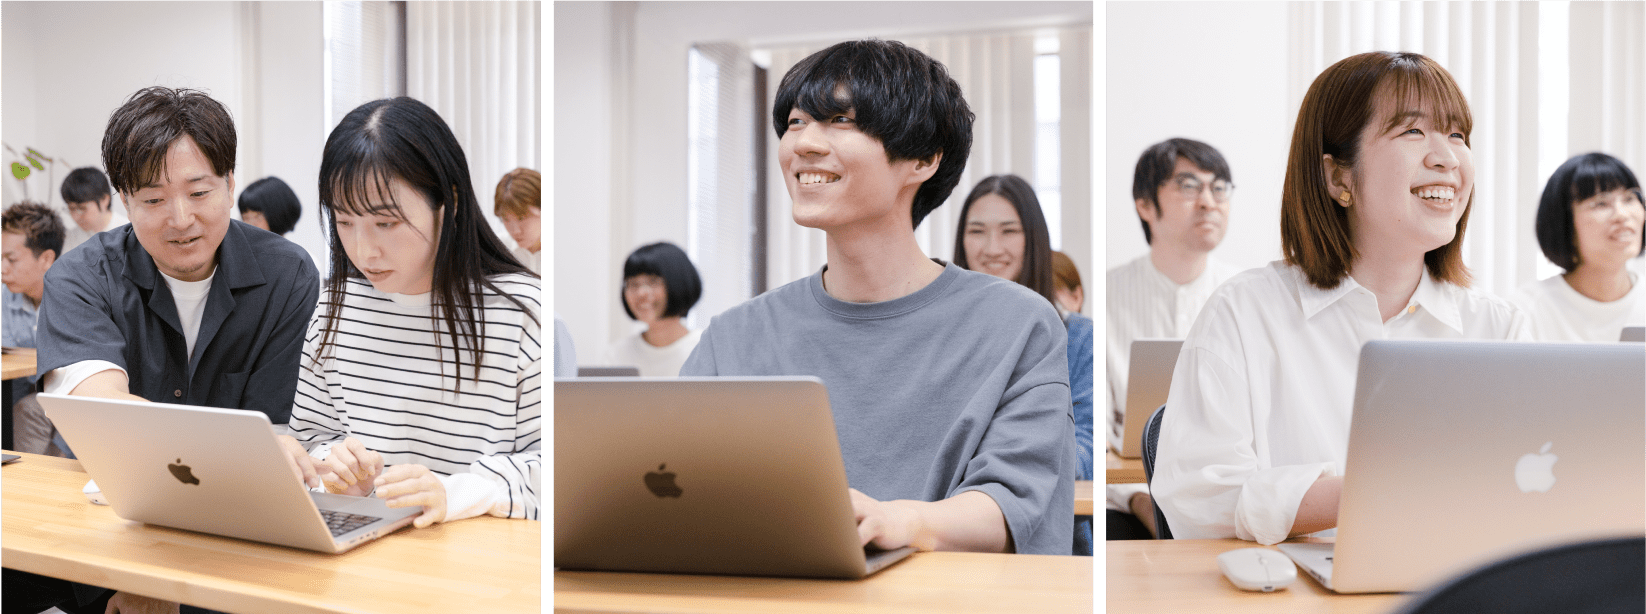 教室でノートパソコンを使っている学生たちの様子。左：男性が女性に教えている。中央：若い男性が笑顔で作業。右：女性が笑顔で前方を見ている。背景に他の学生もいる。